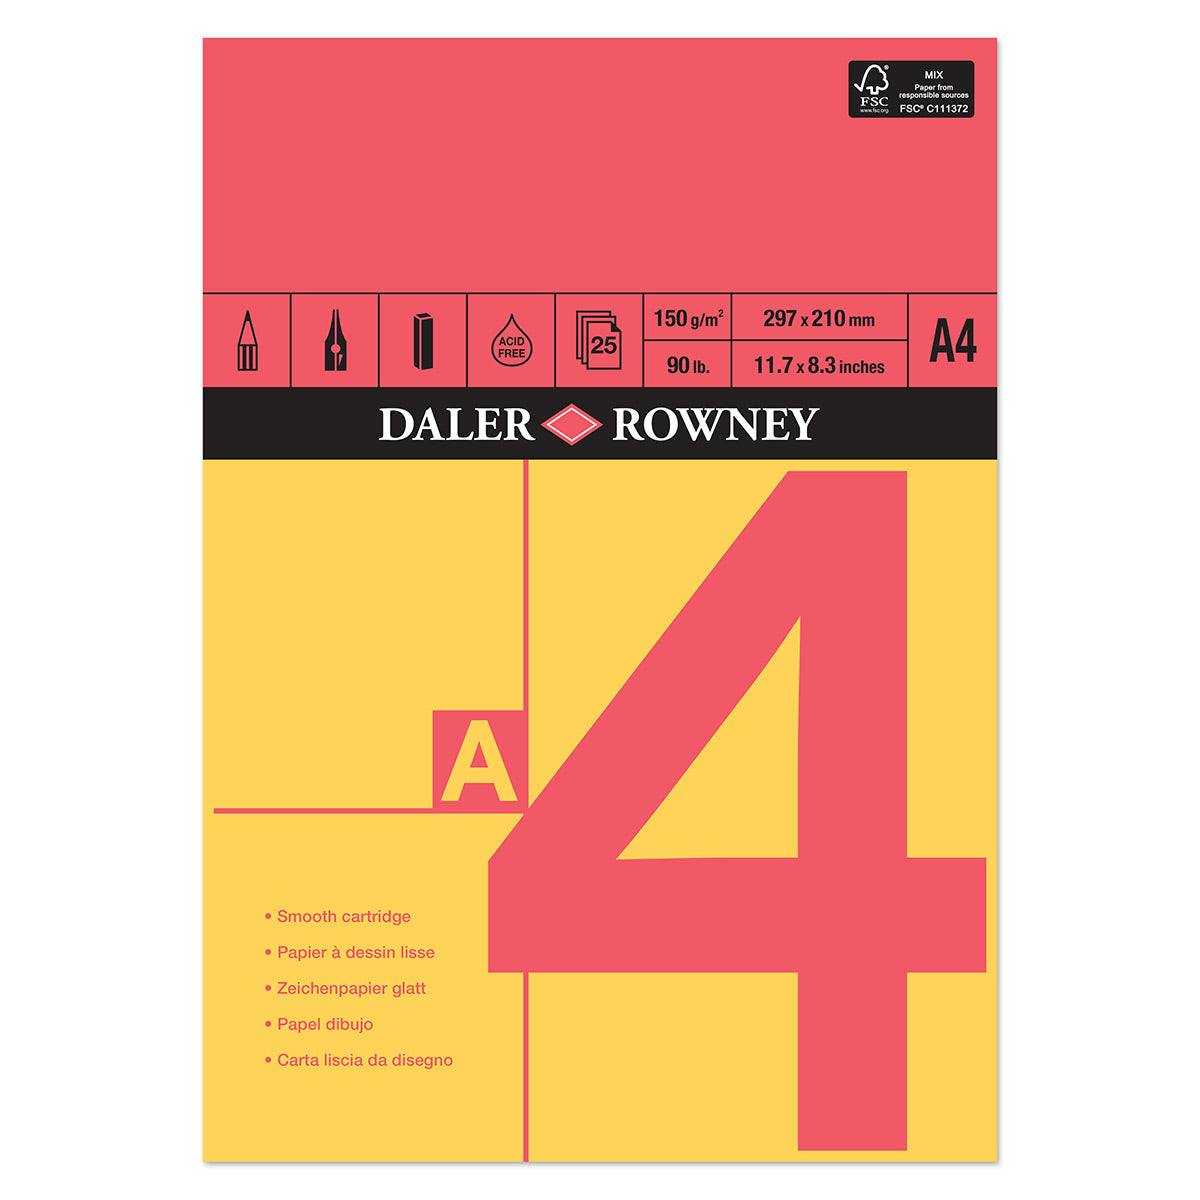 Daler Rowney - Cartouche Gommée Rouge et Jaune - A4 - 150g/m²